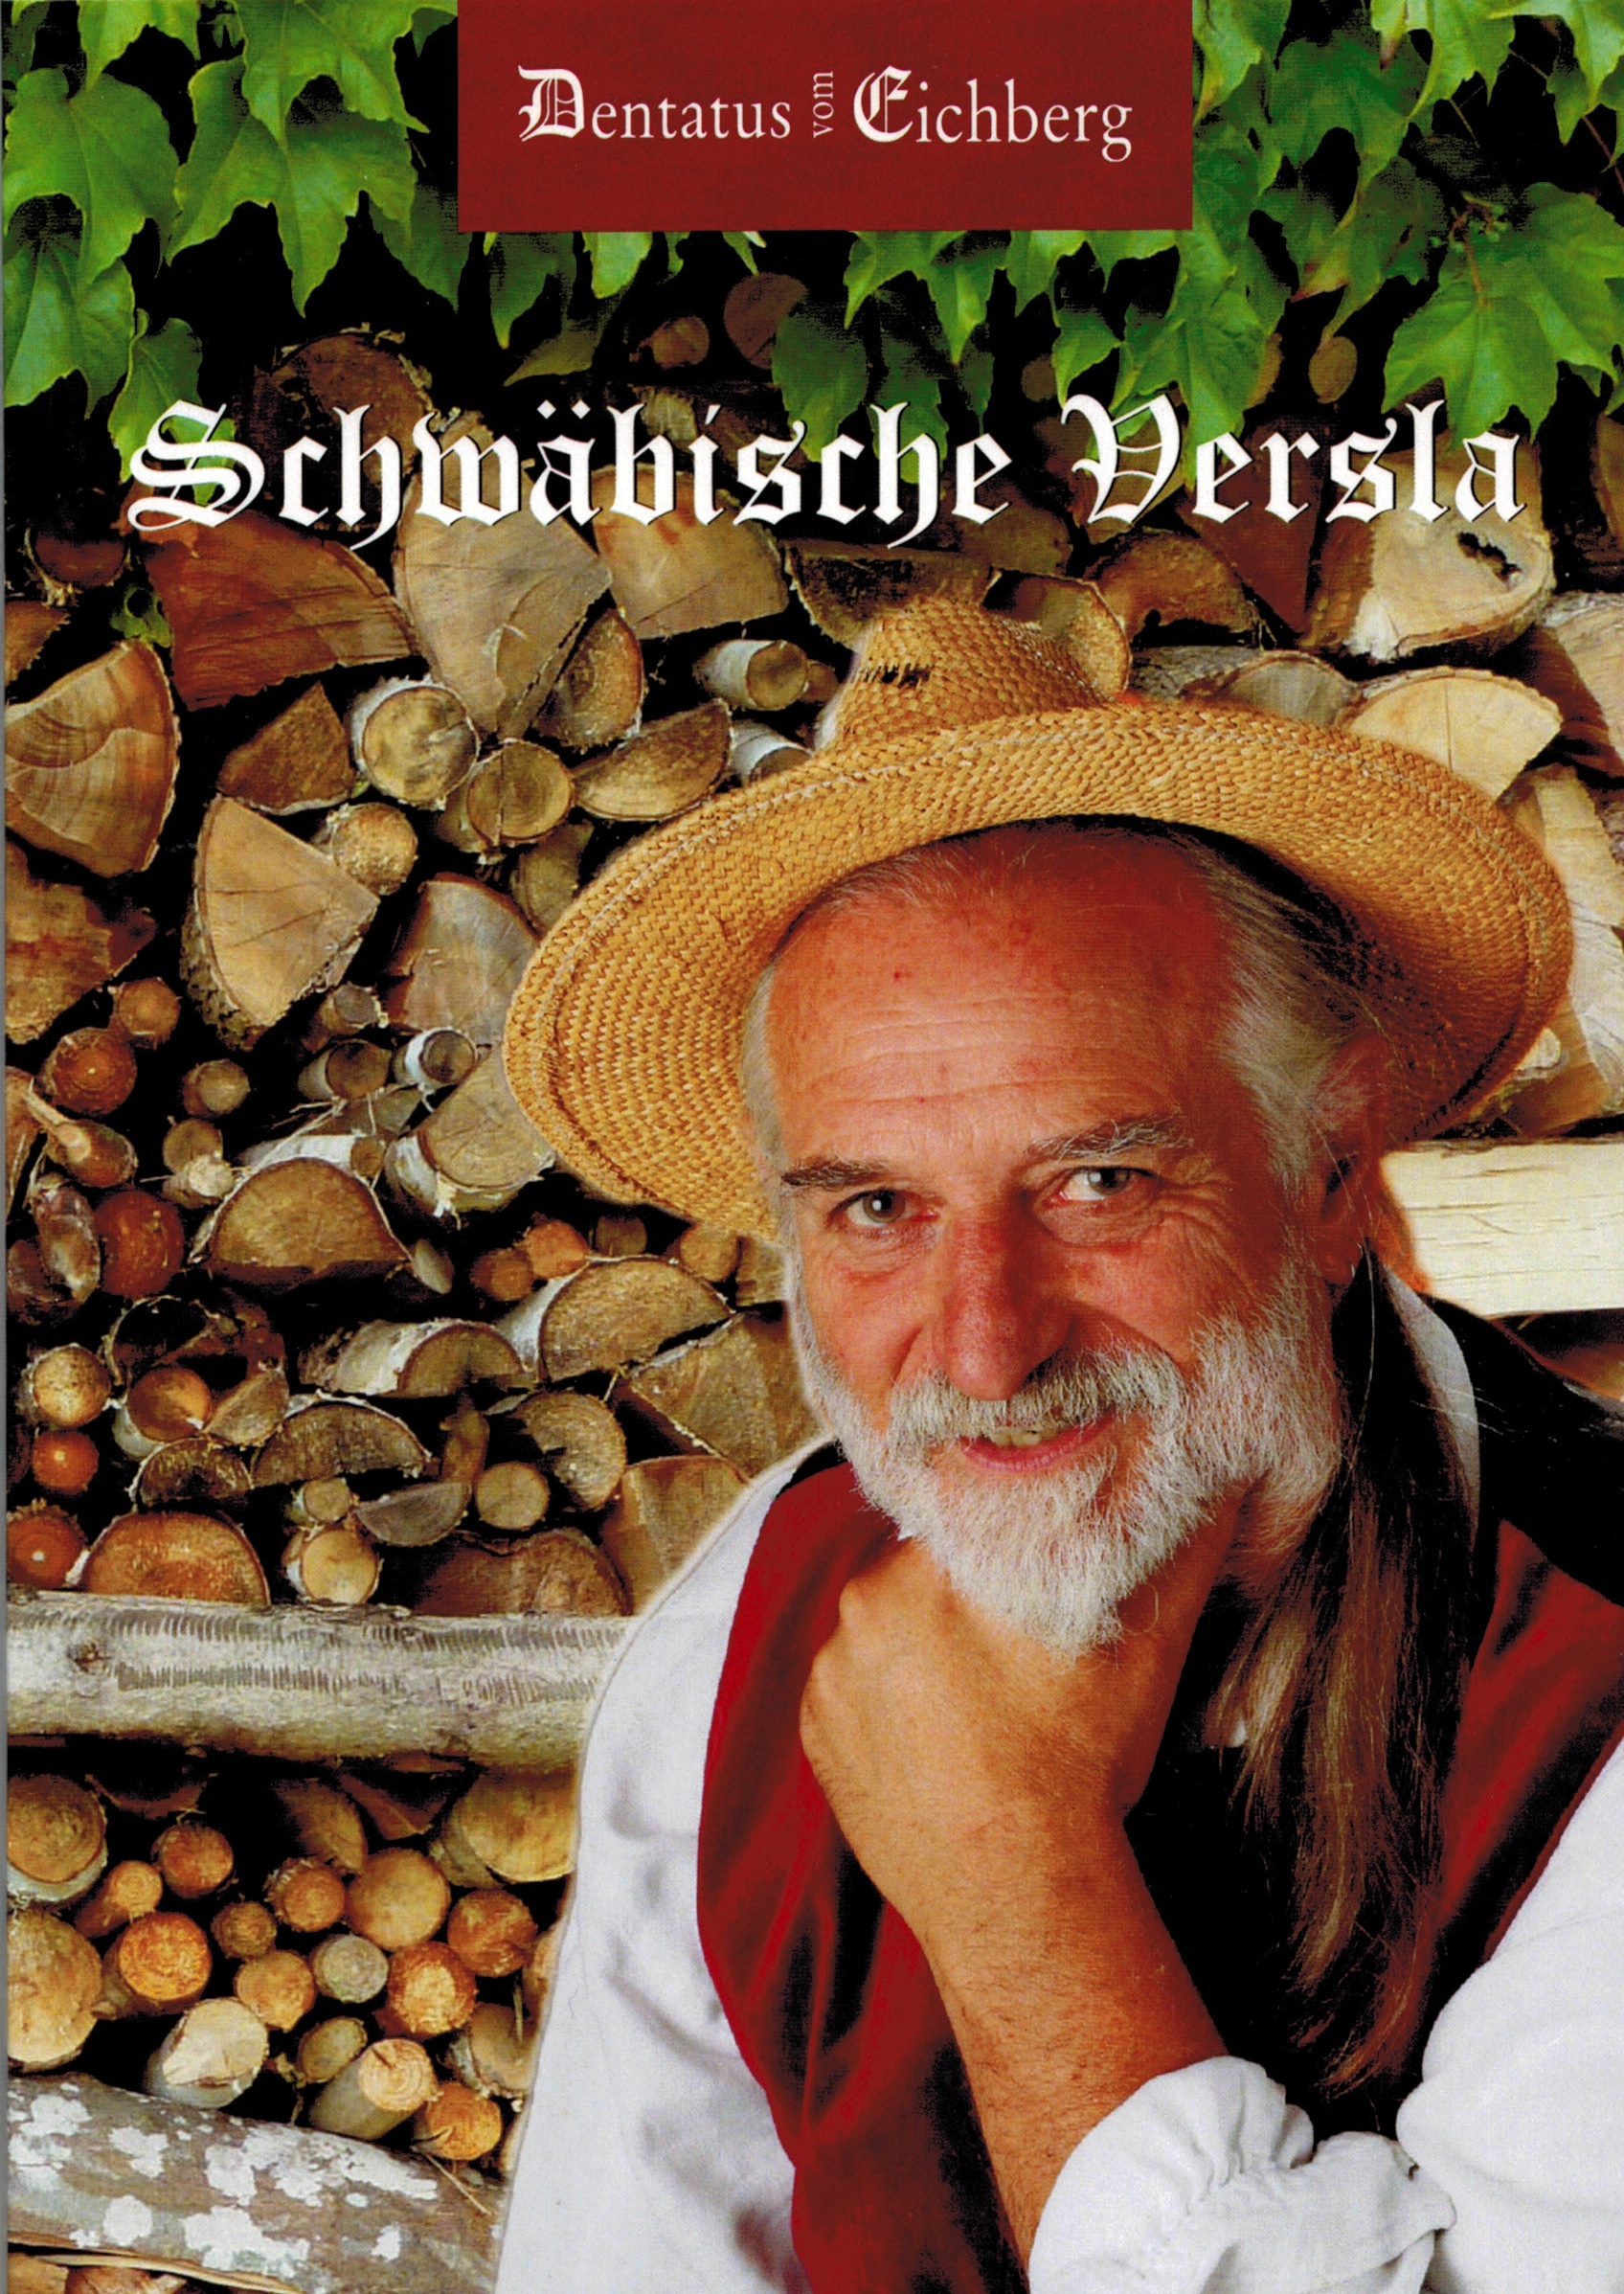 Cover Schwabische Versla 11